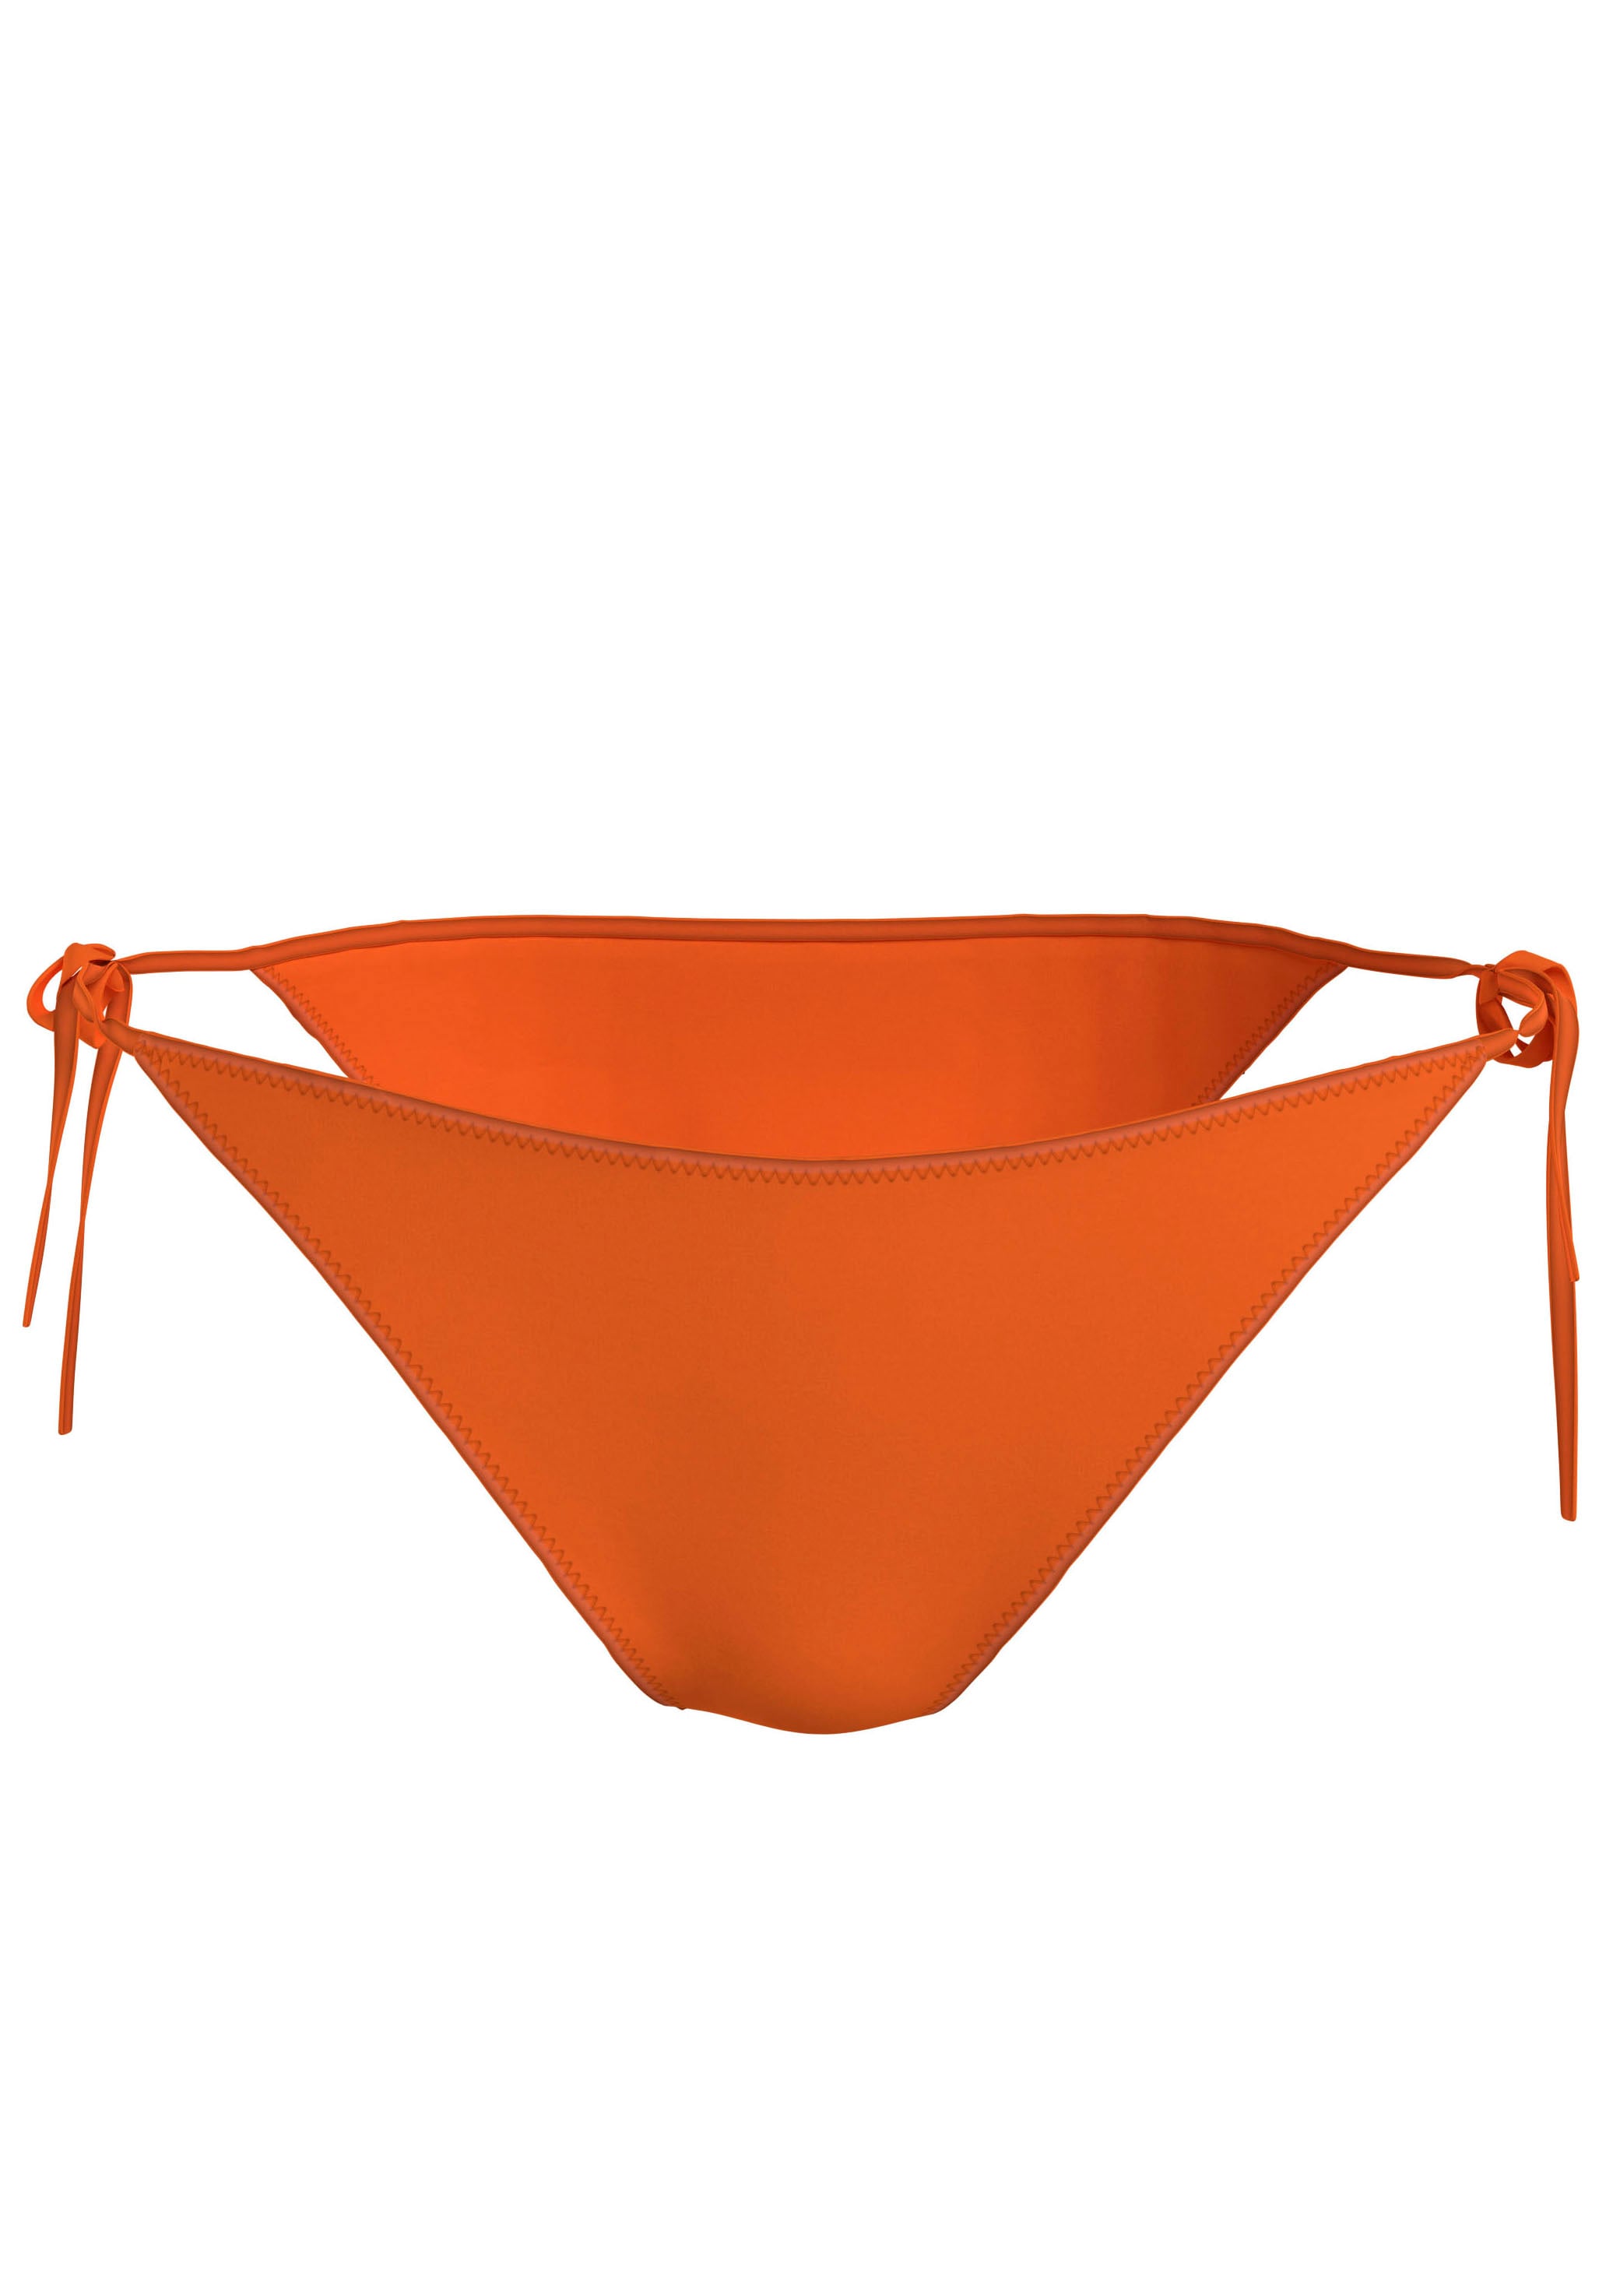 Bikini orange - online OTTO ganz unkompliziert bei einkaufen